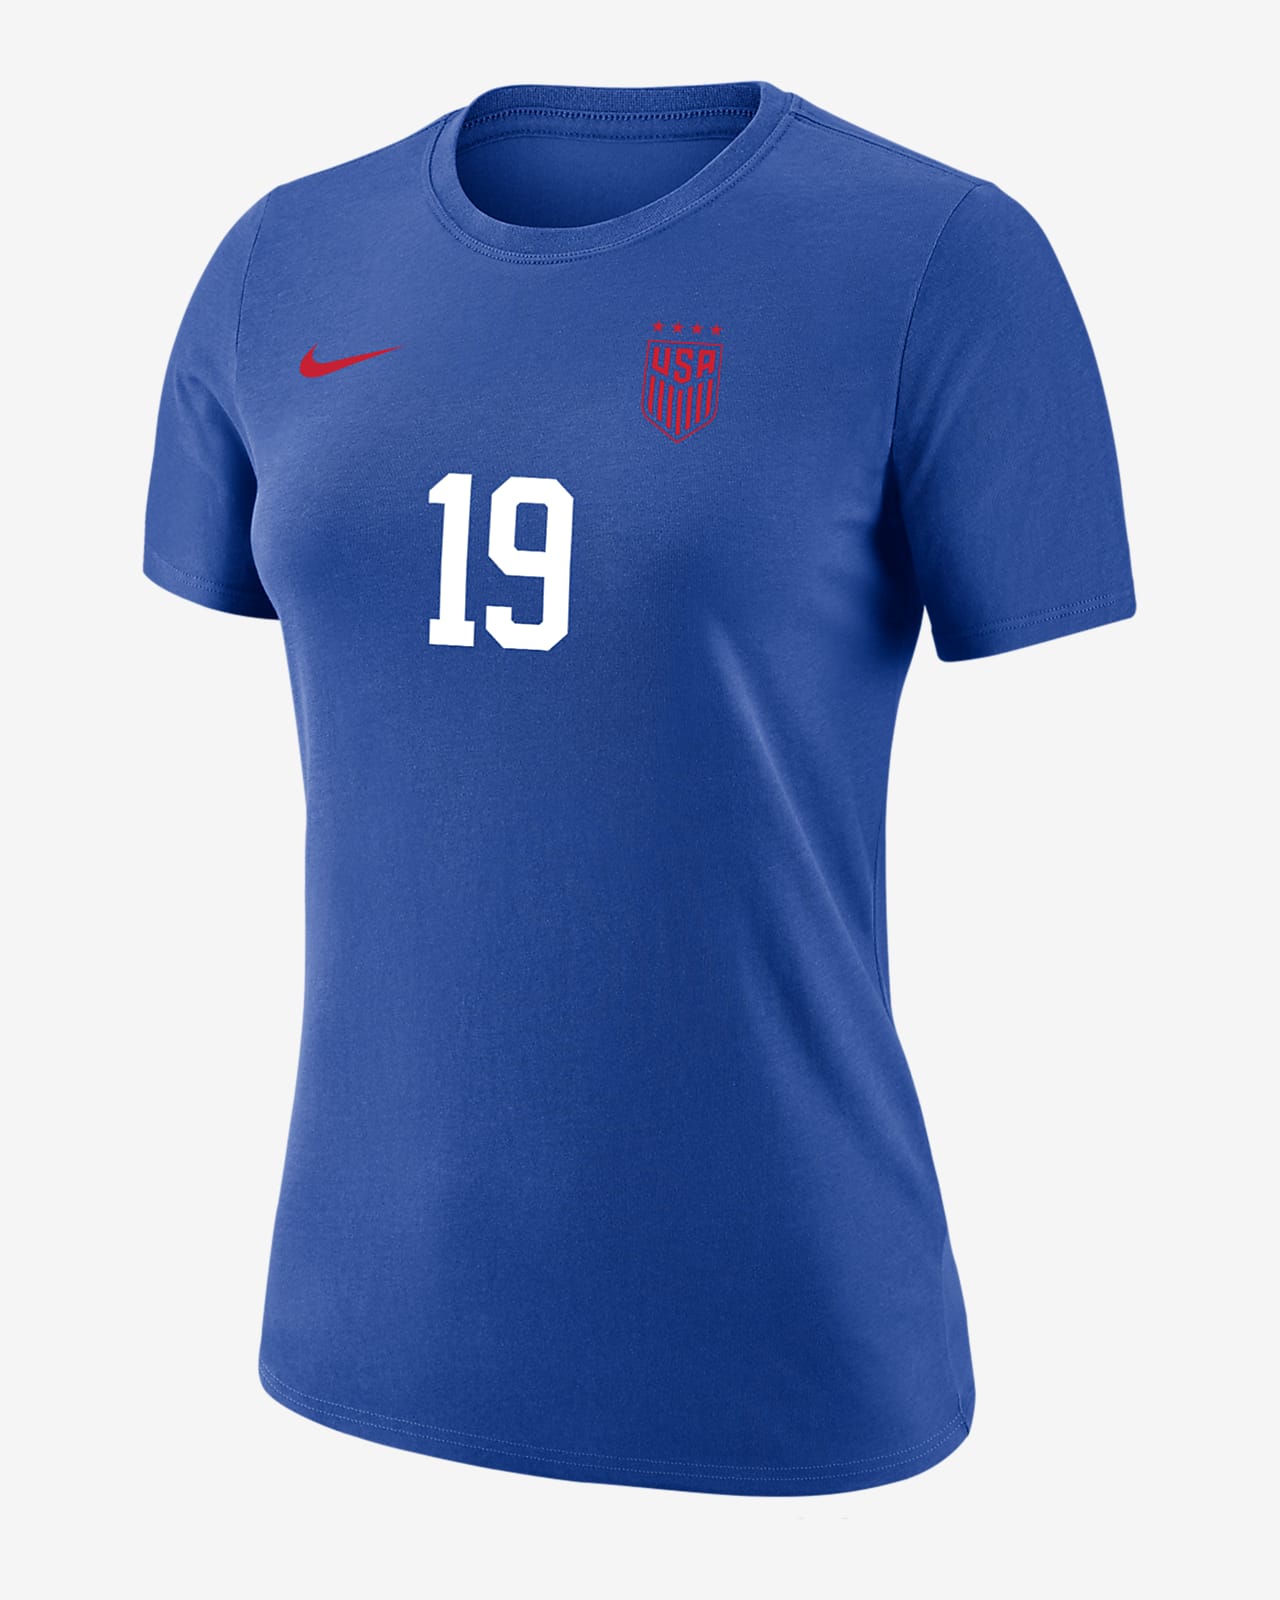 Crystal Dunn USWNT Women's Nike Soccer T-Shirt